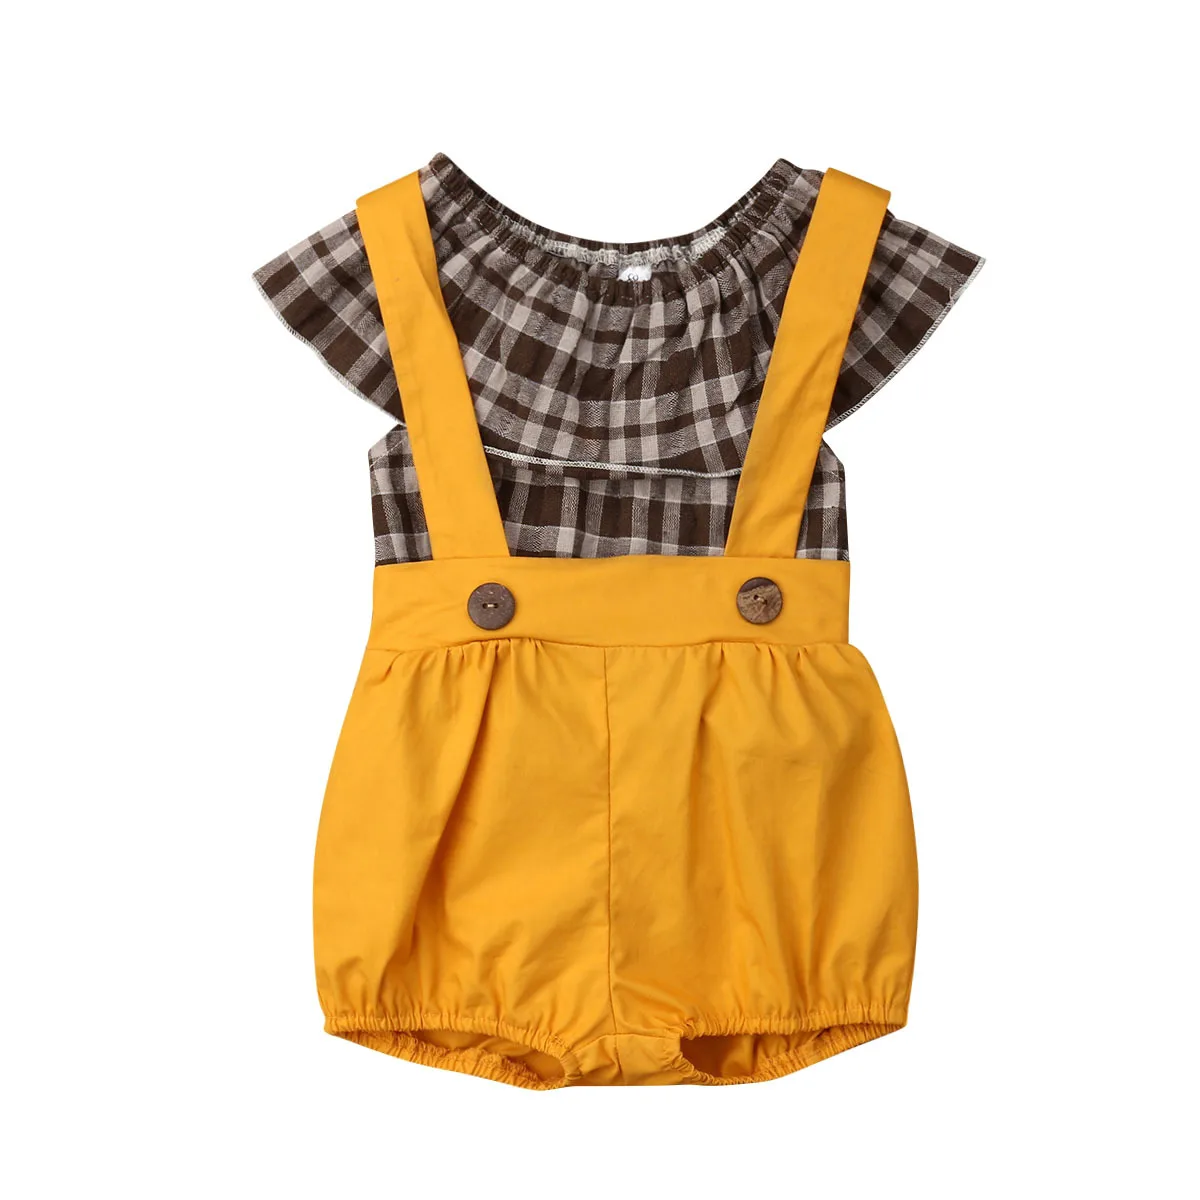 2 предмета, Детский комбинезон для маленьких девочек, шорты, штаны, комбинезоны, хорошая летняя одежда